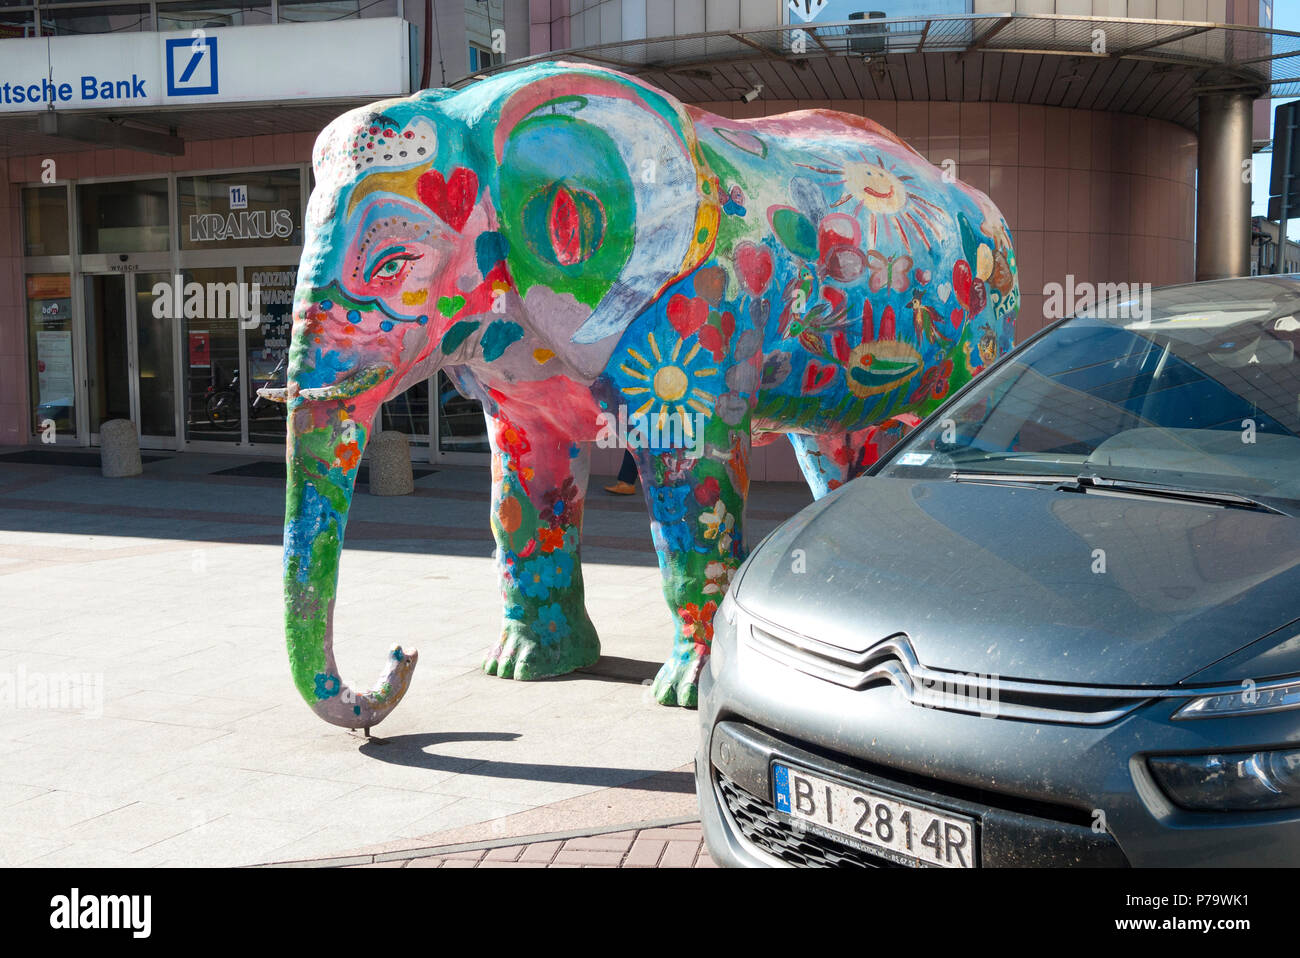 Modèle de taille d'un éléphant peint avec des motifs et couleurs, Tarnow, Pologne, l'Europe du sud-est. Banque D'Images